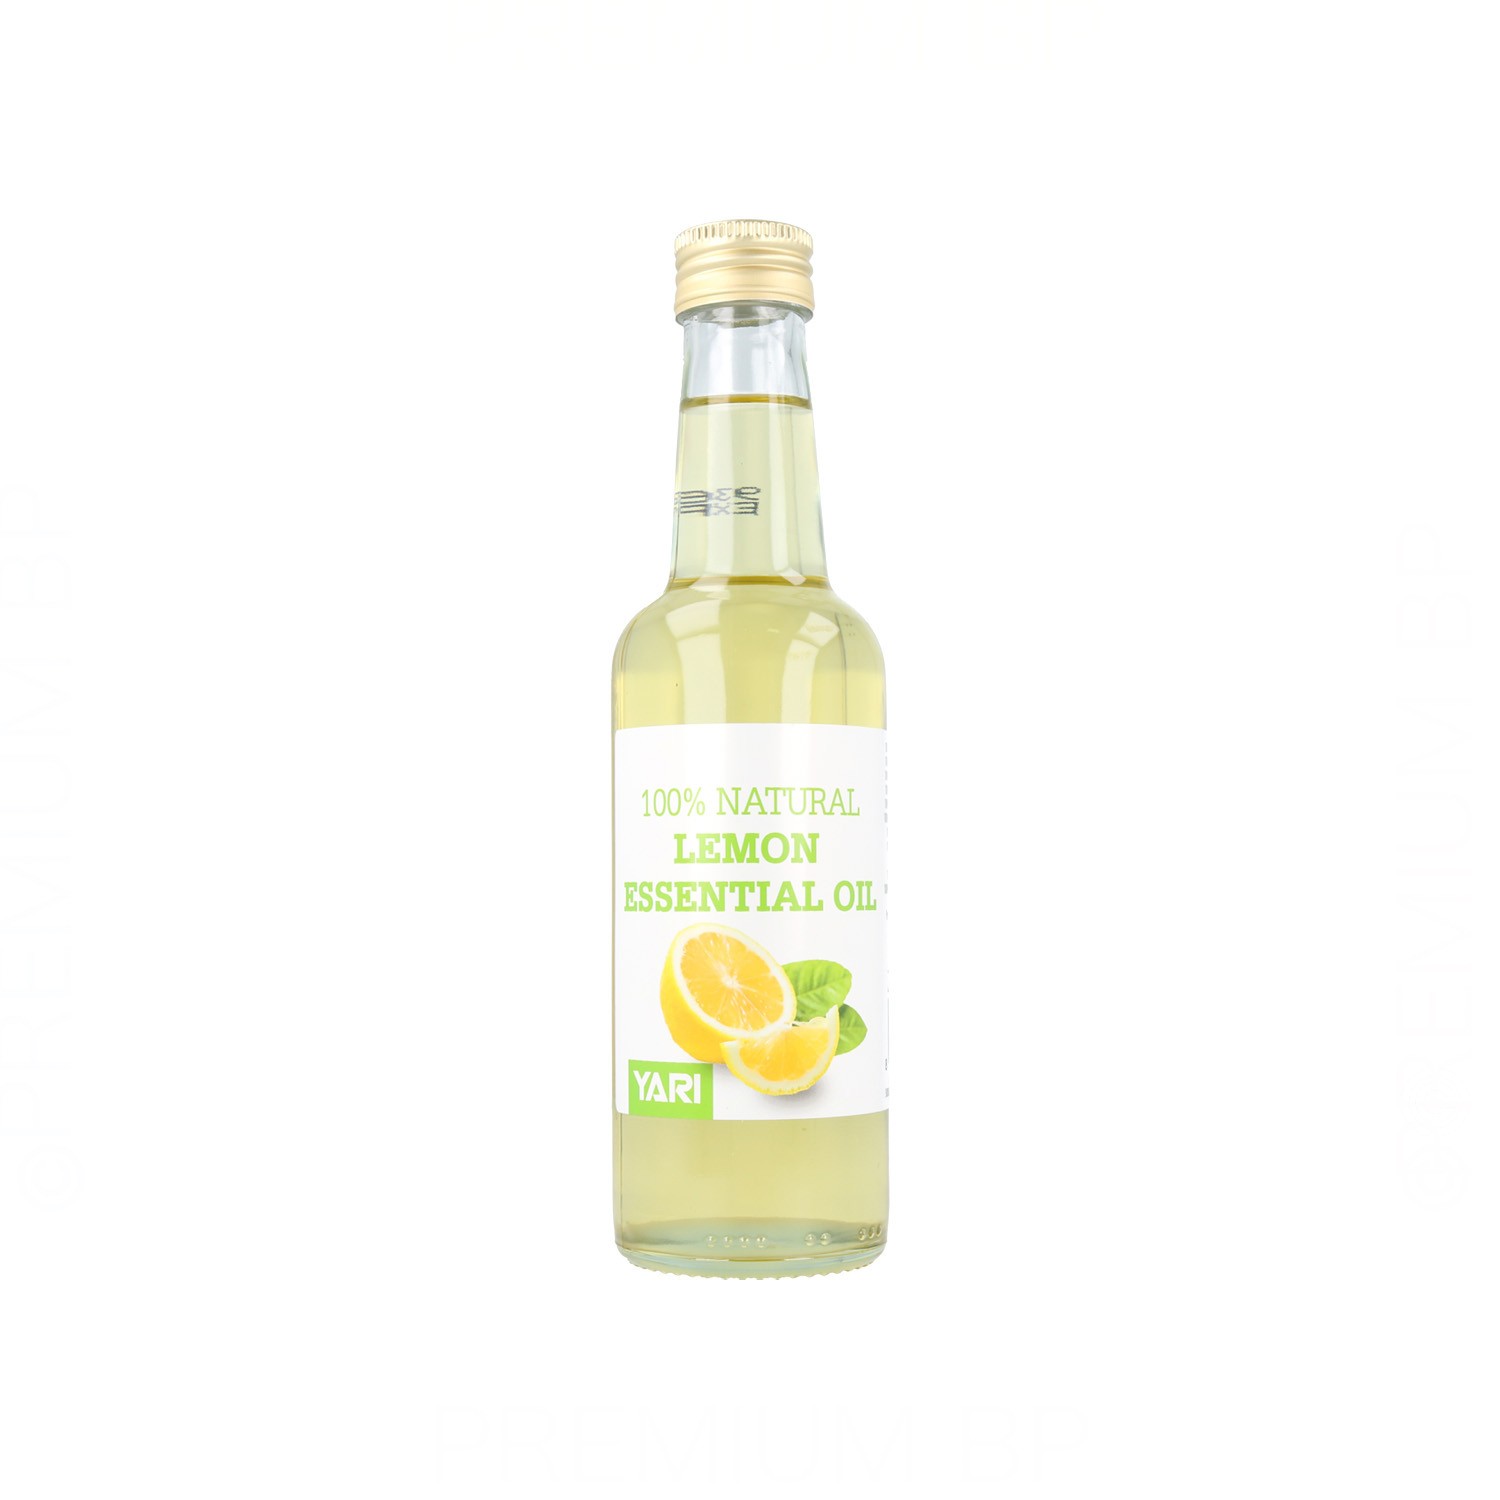 Yari Natural Lemon Essence Oil 250 ml